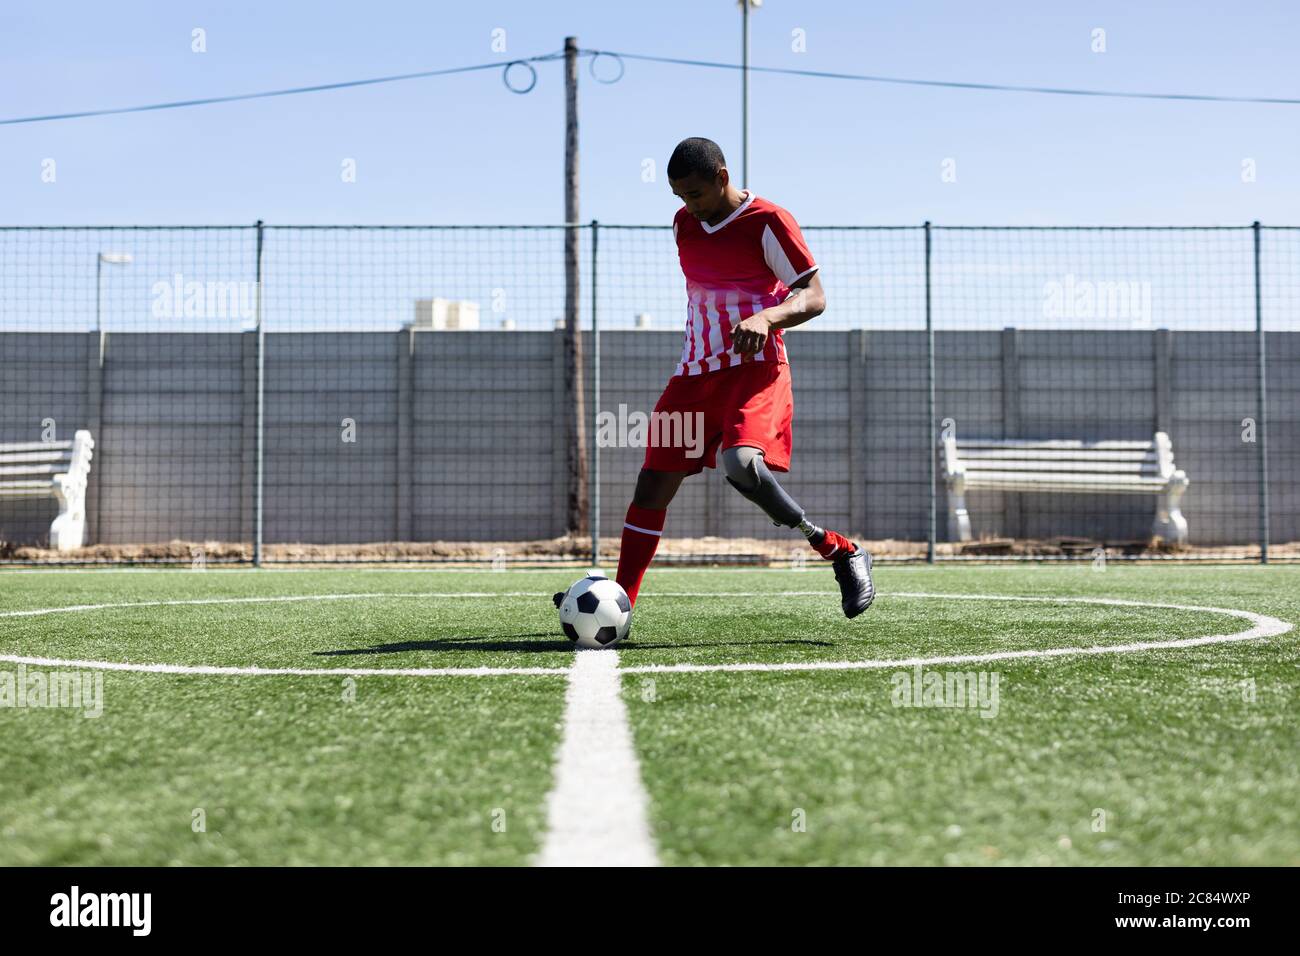 Joueur de football masculin de course mixte avec jambe prothétique portant un entraînement de bande d'équipe sur un terrain de sport au soleil, en chauffant le ballon de kicking. Banque D'Images